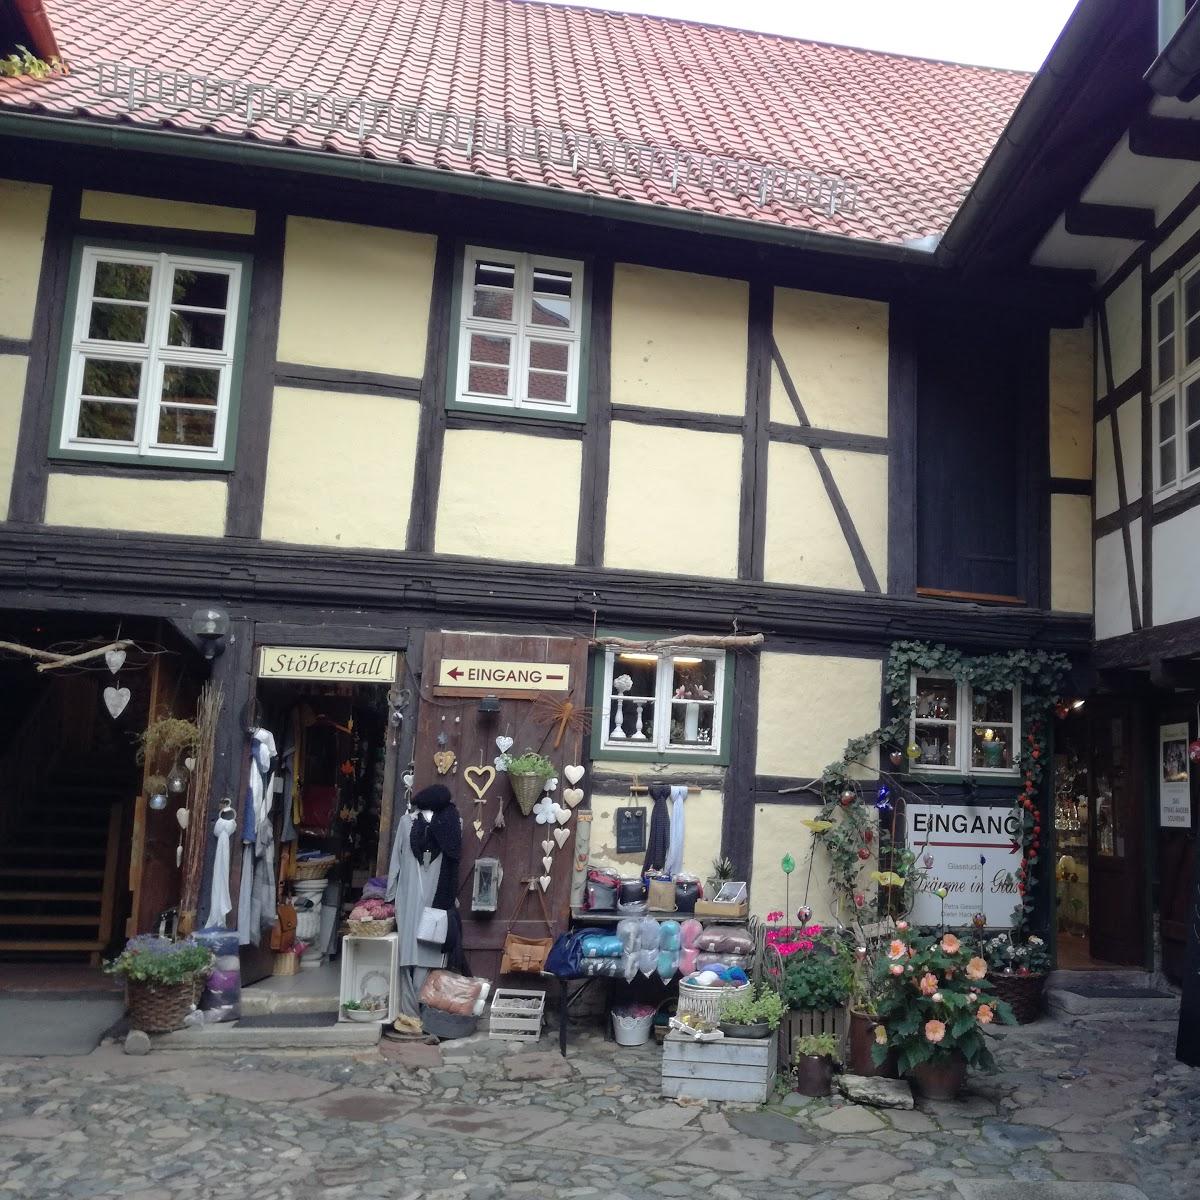 Restaurant "Stadtküche" in Wernigerode